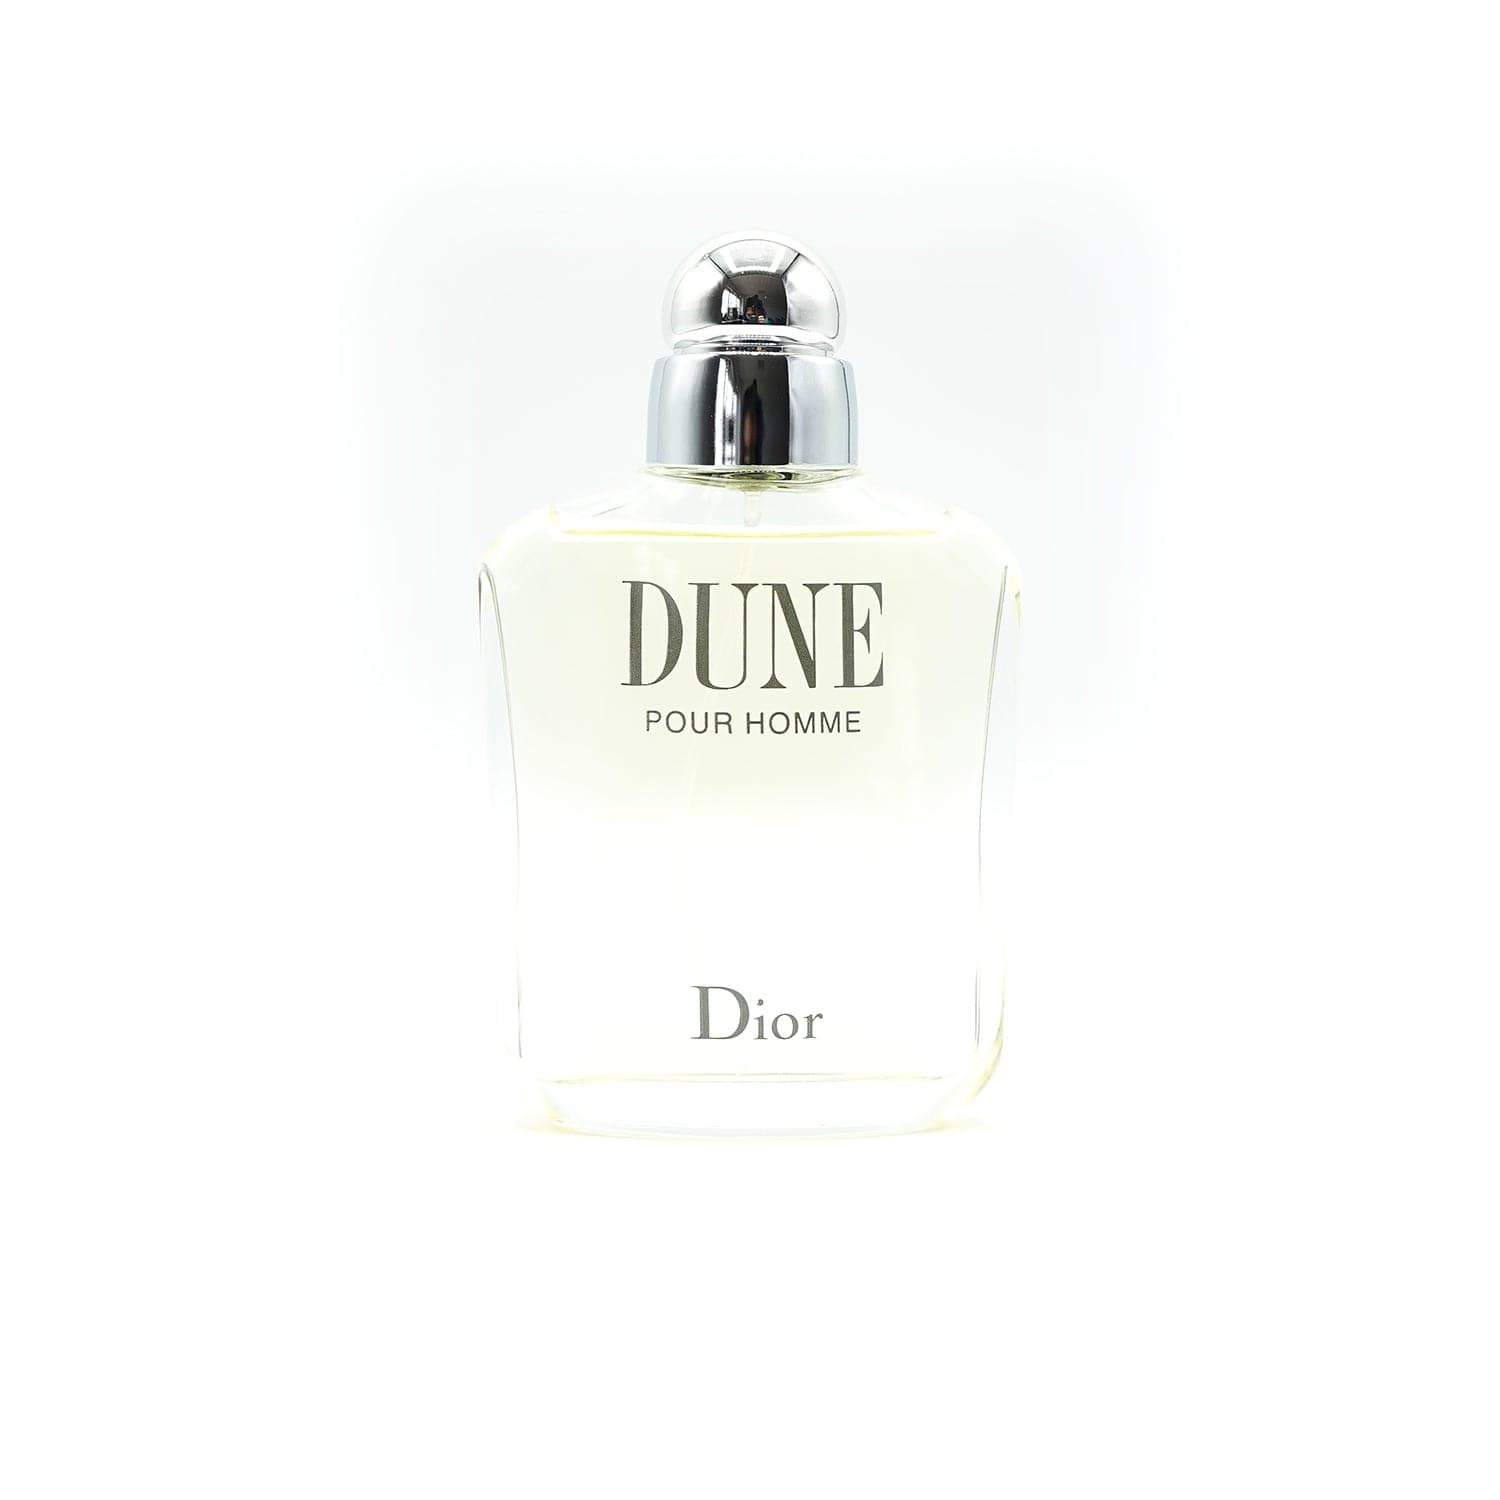 Dior | Dune pour Homme Abfüllung